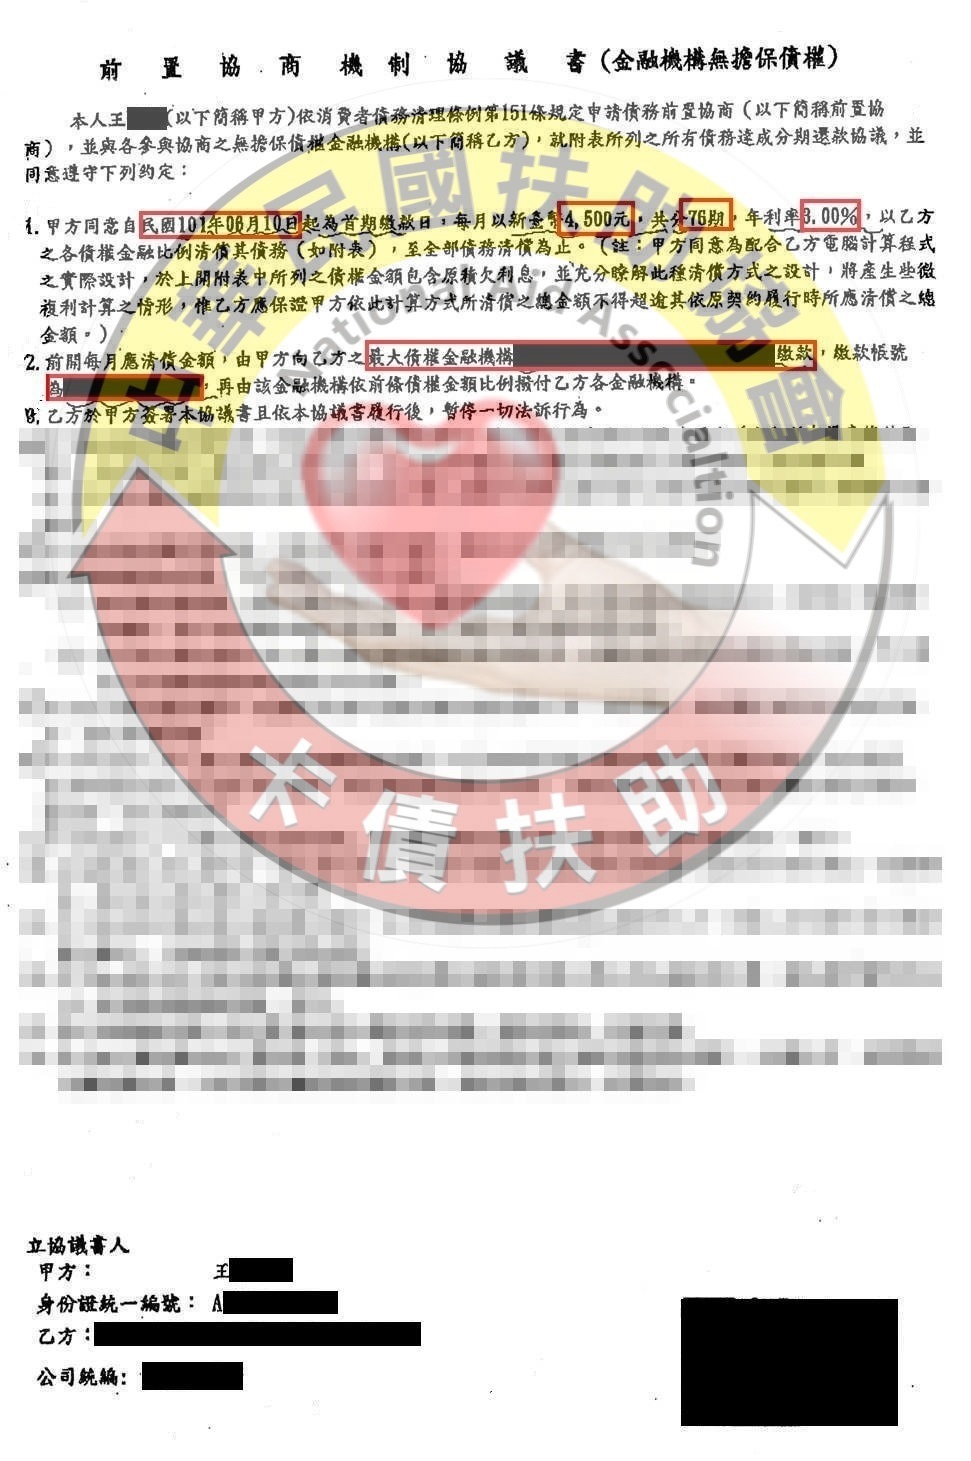 台南王先生-協商成功依76期3%月付4,500元 